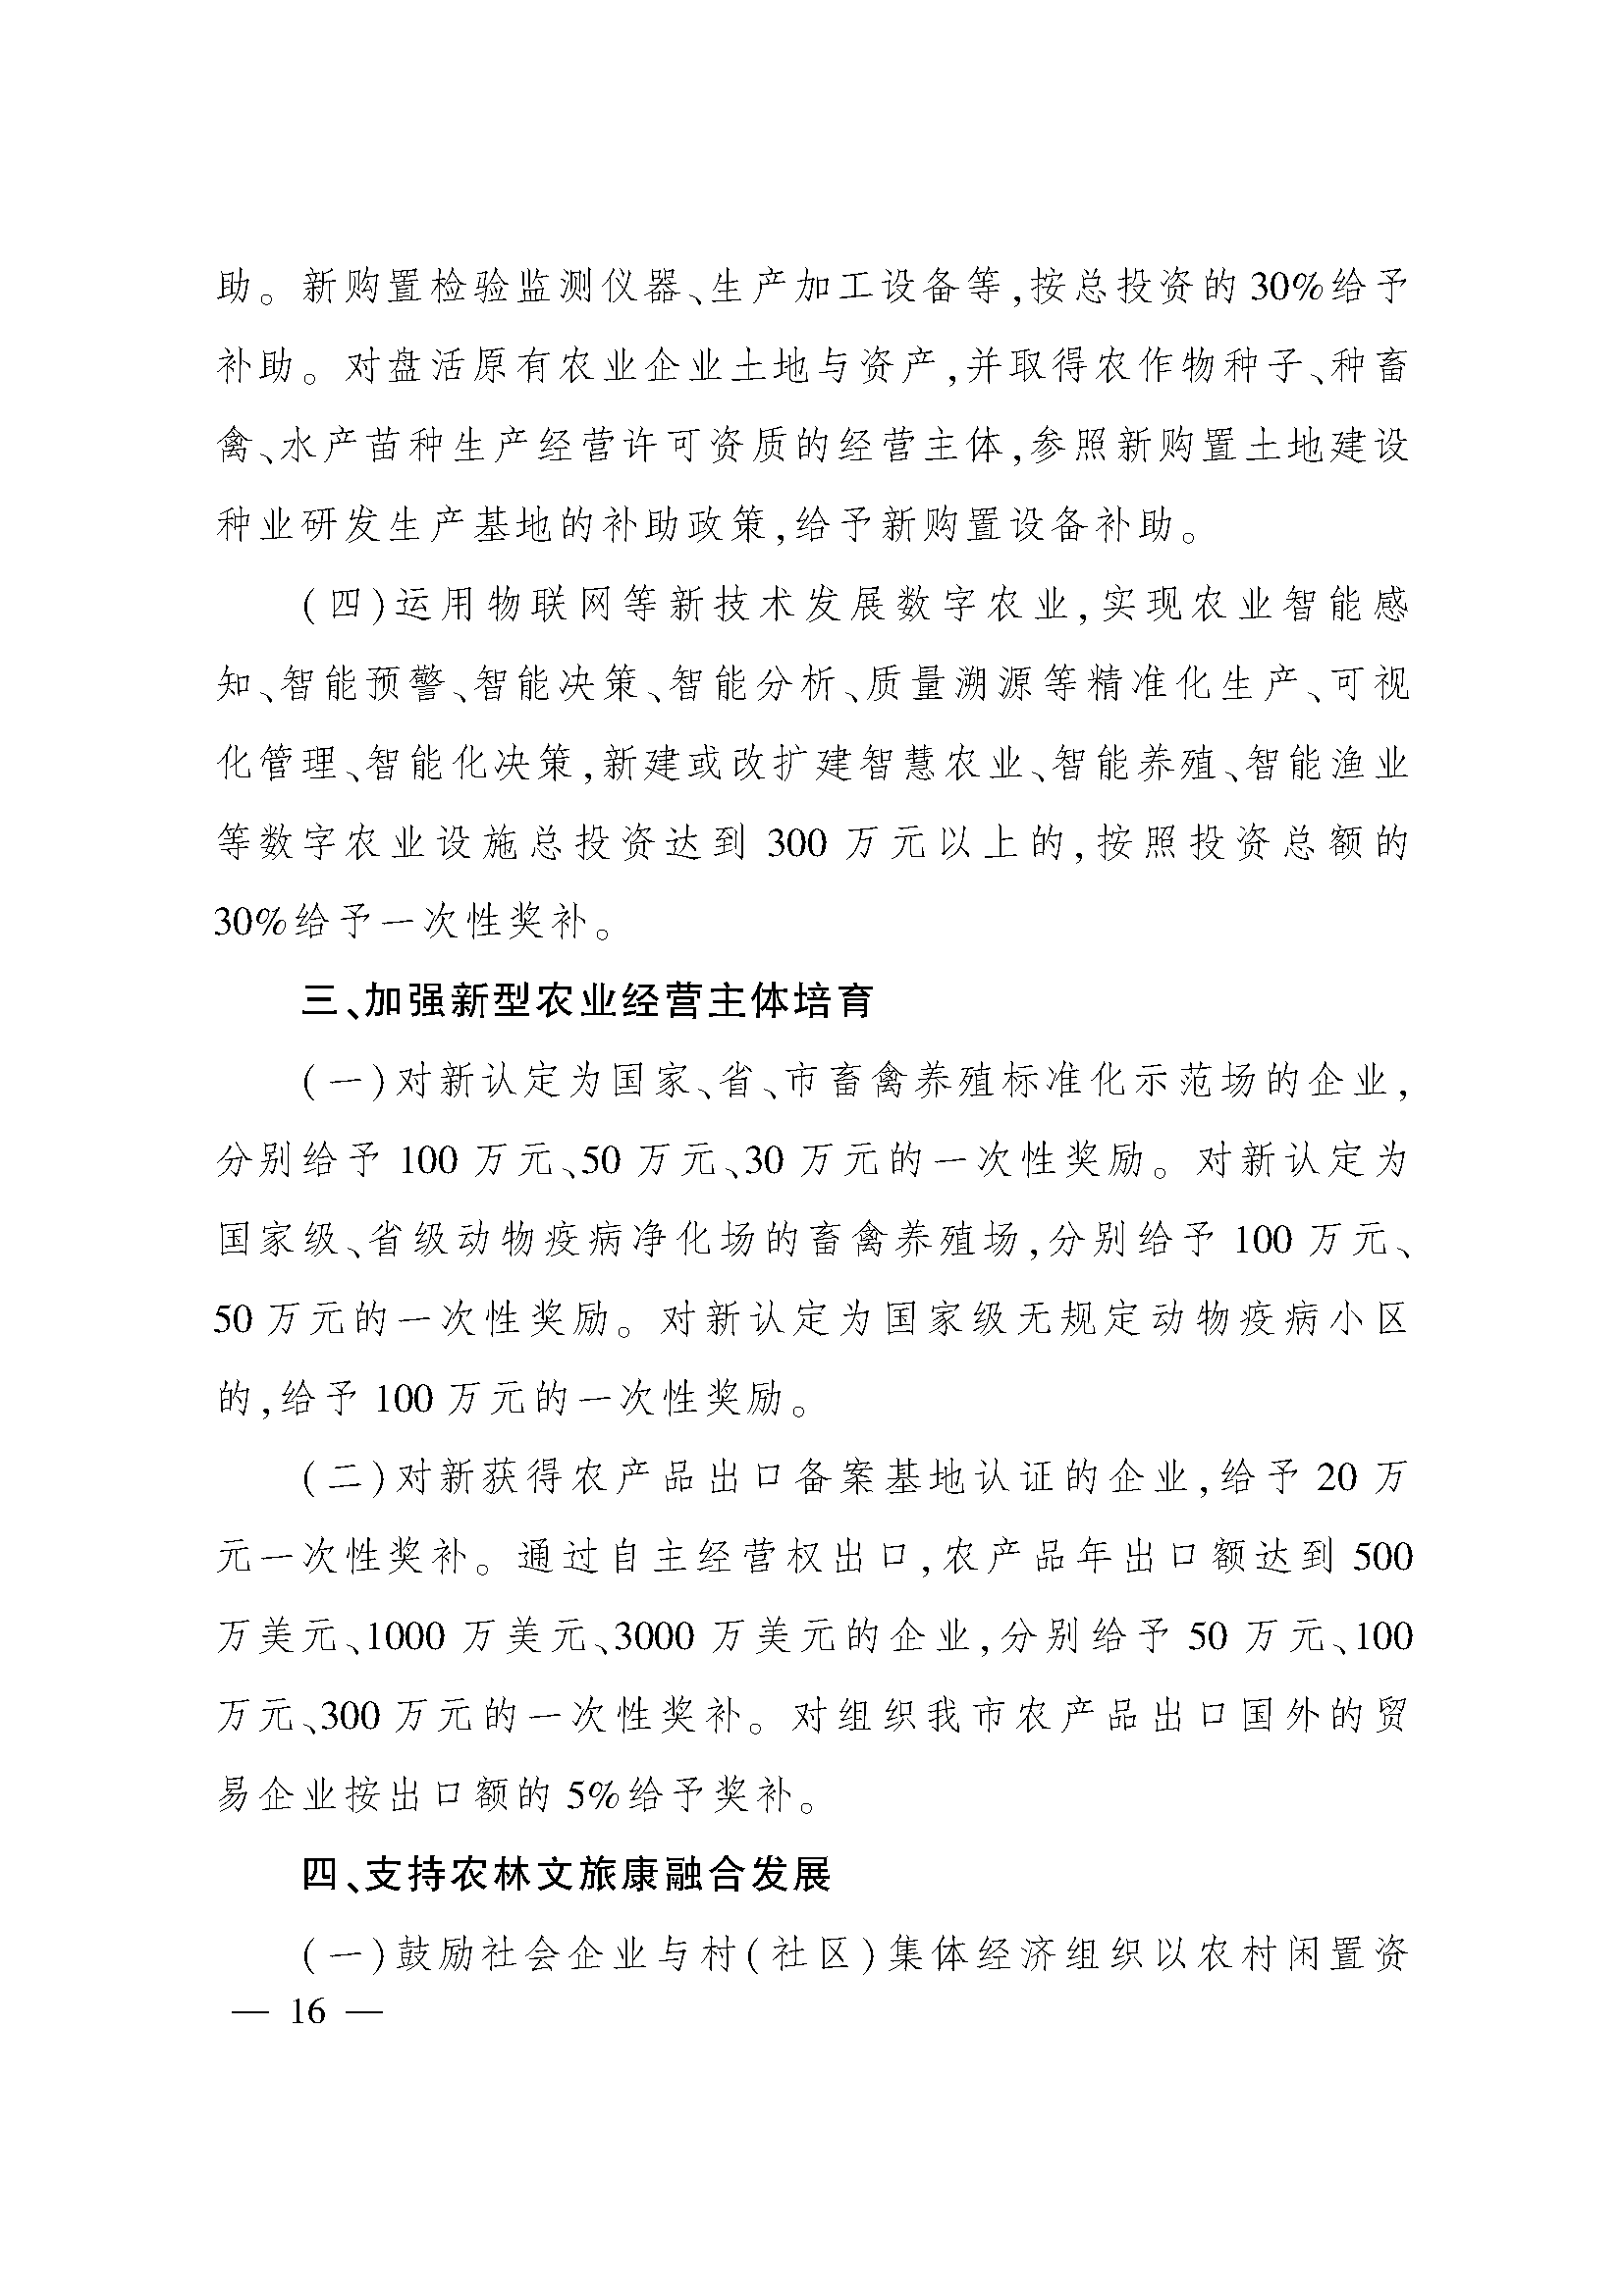 太原市人民政府办公室关于印发太原市招商引资若干措施的通知(图16)